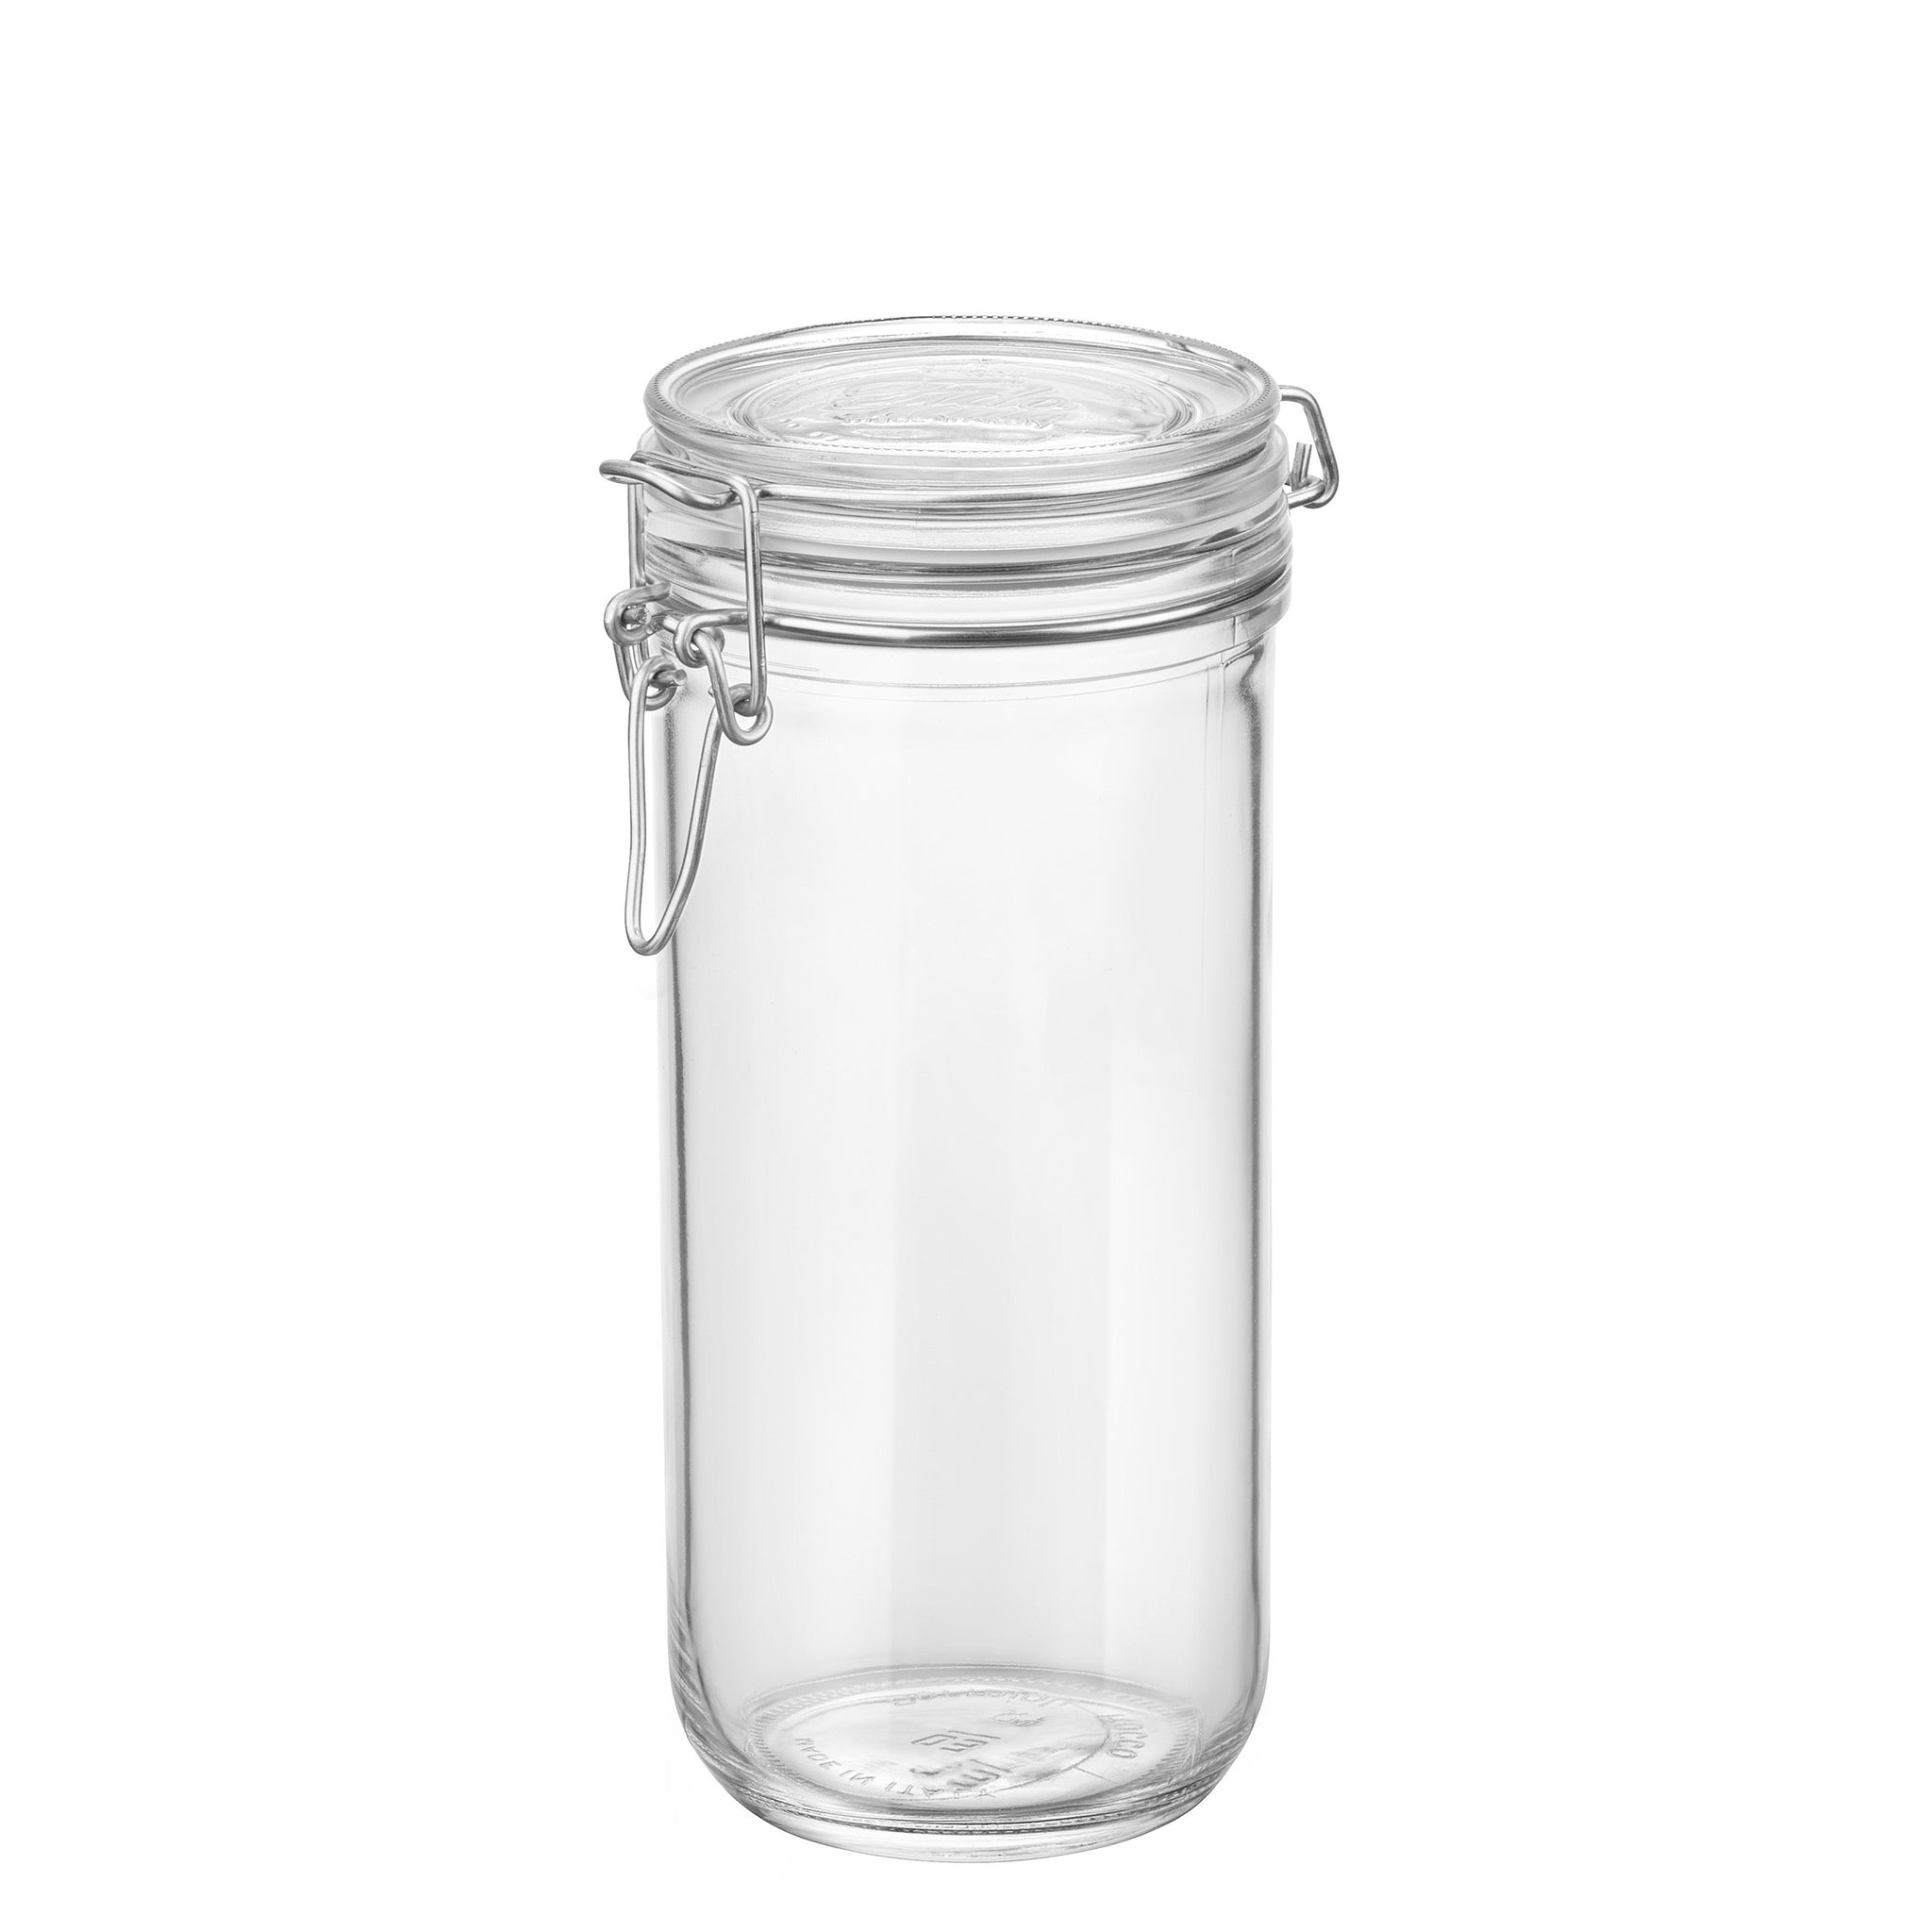 Bormioli Rocco Fido Glass Jar, 101.5 oz